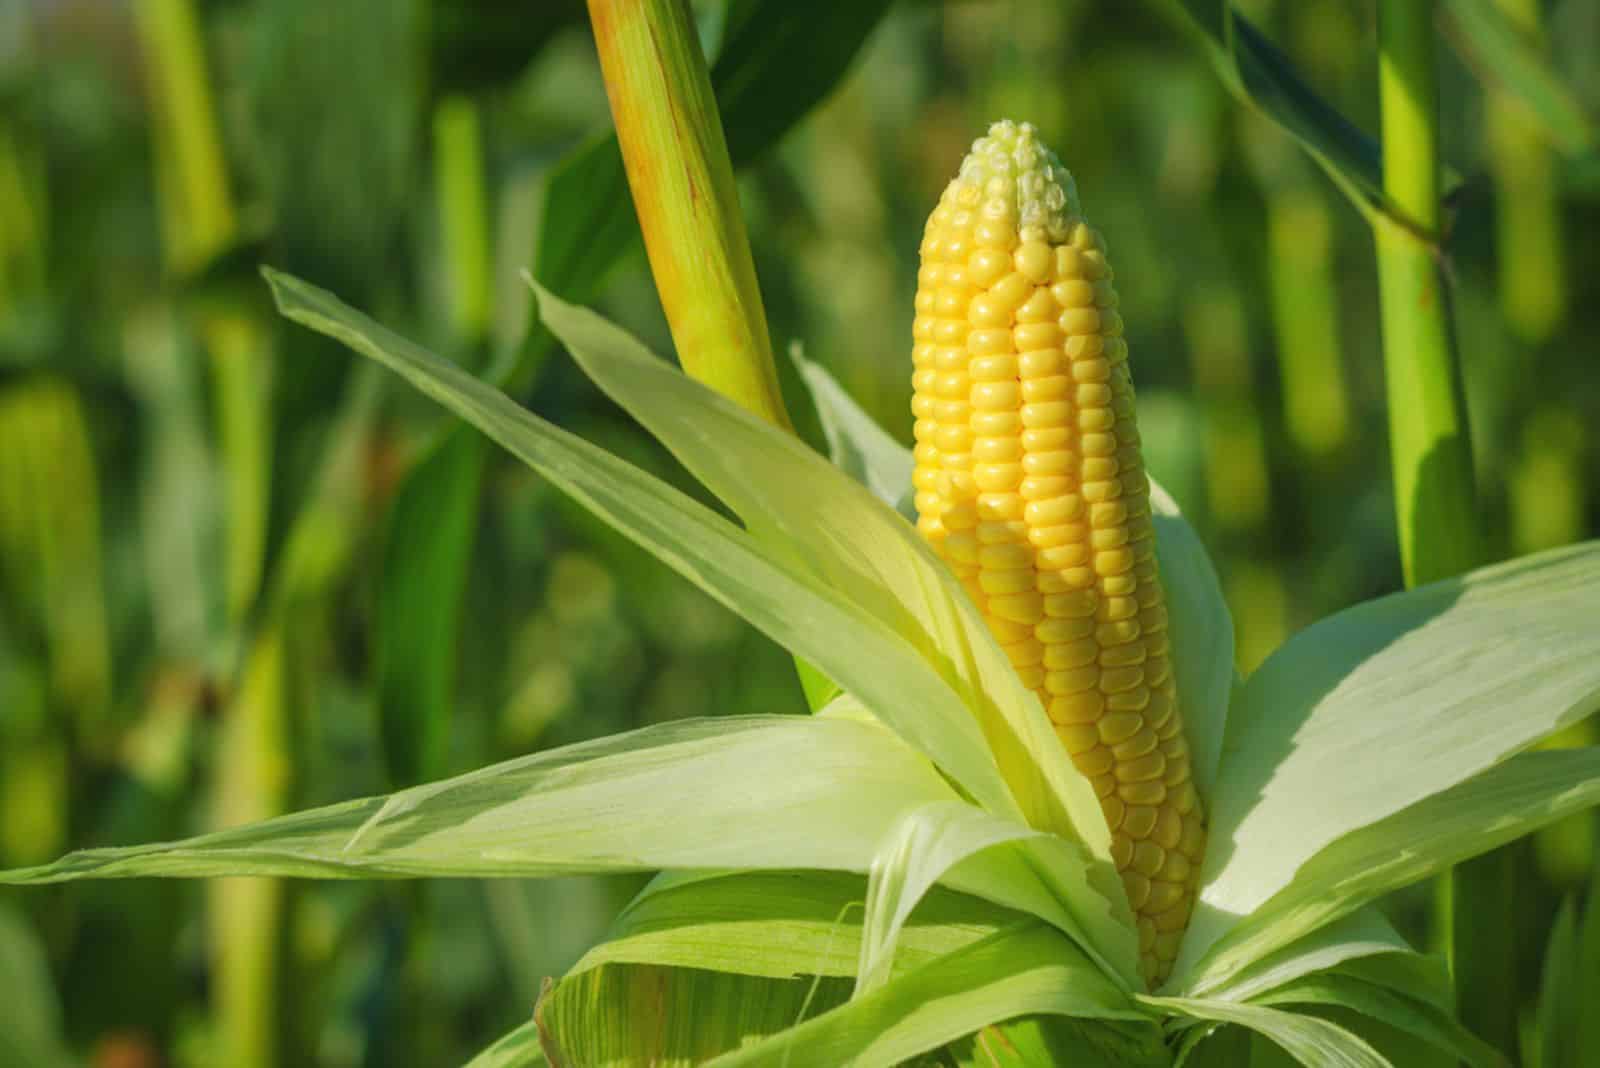 Ear of corn in a field in summer before harvest.